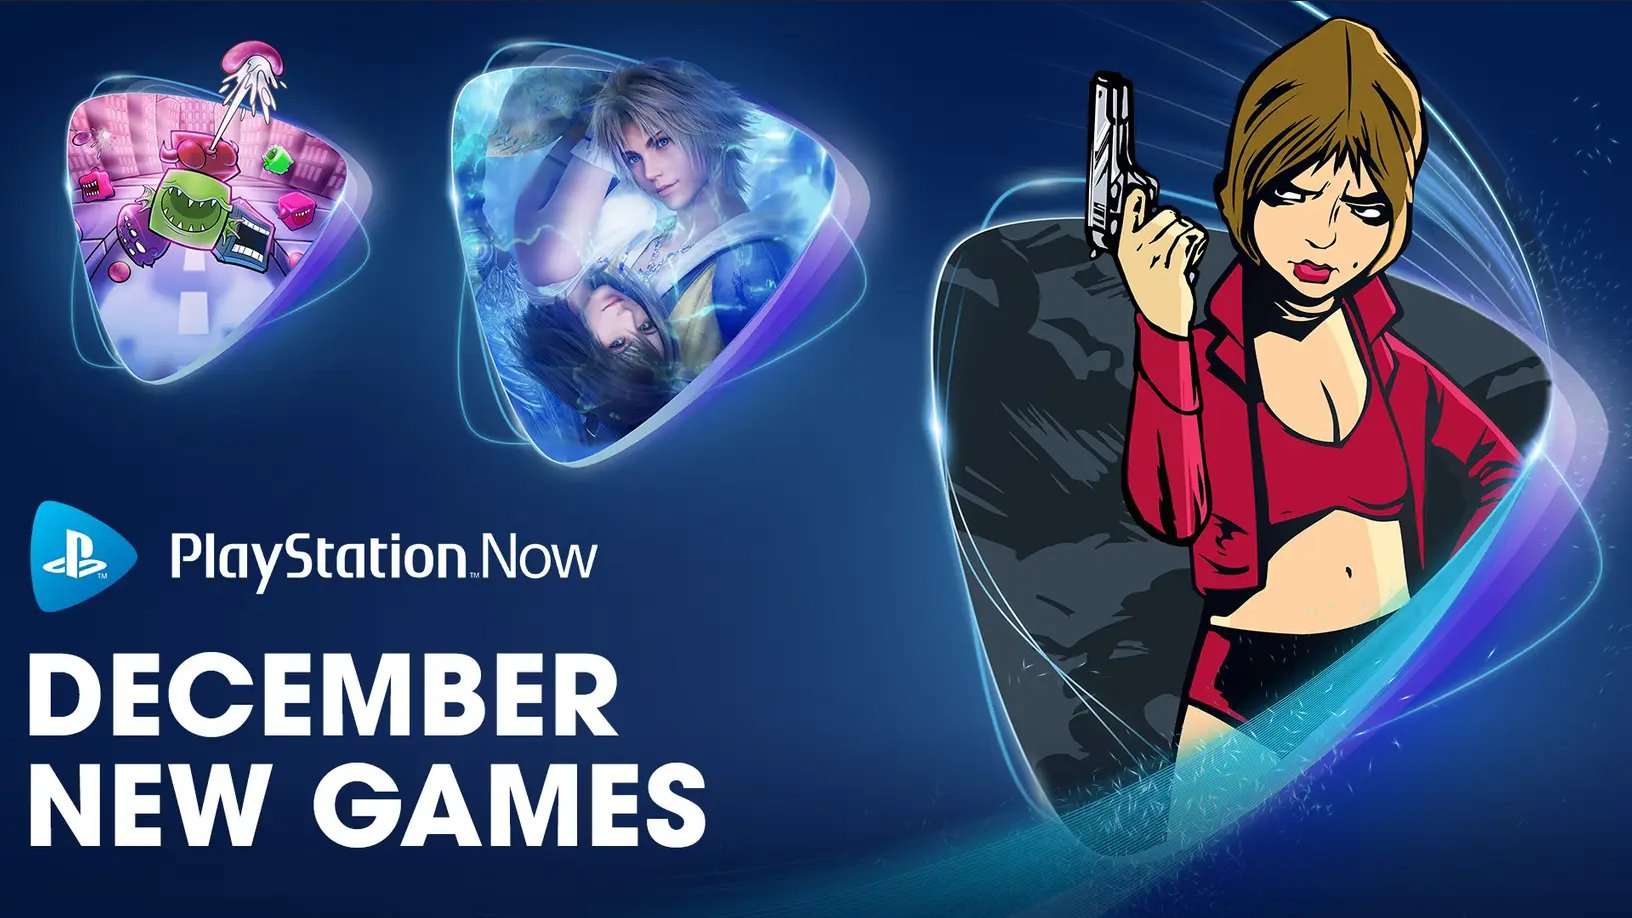 Desvelados los nuevos juegos de diciembre para PlayStation Now